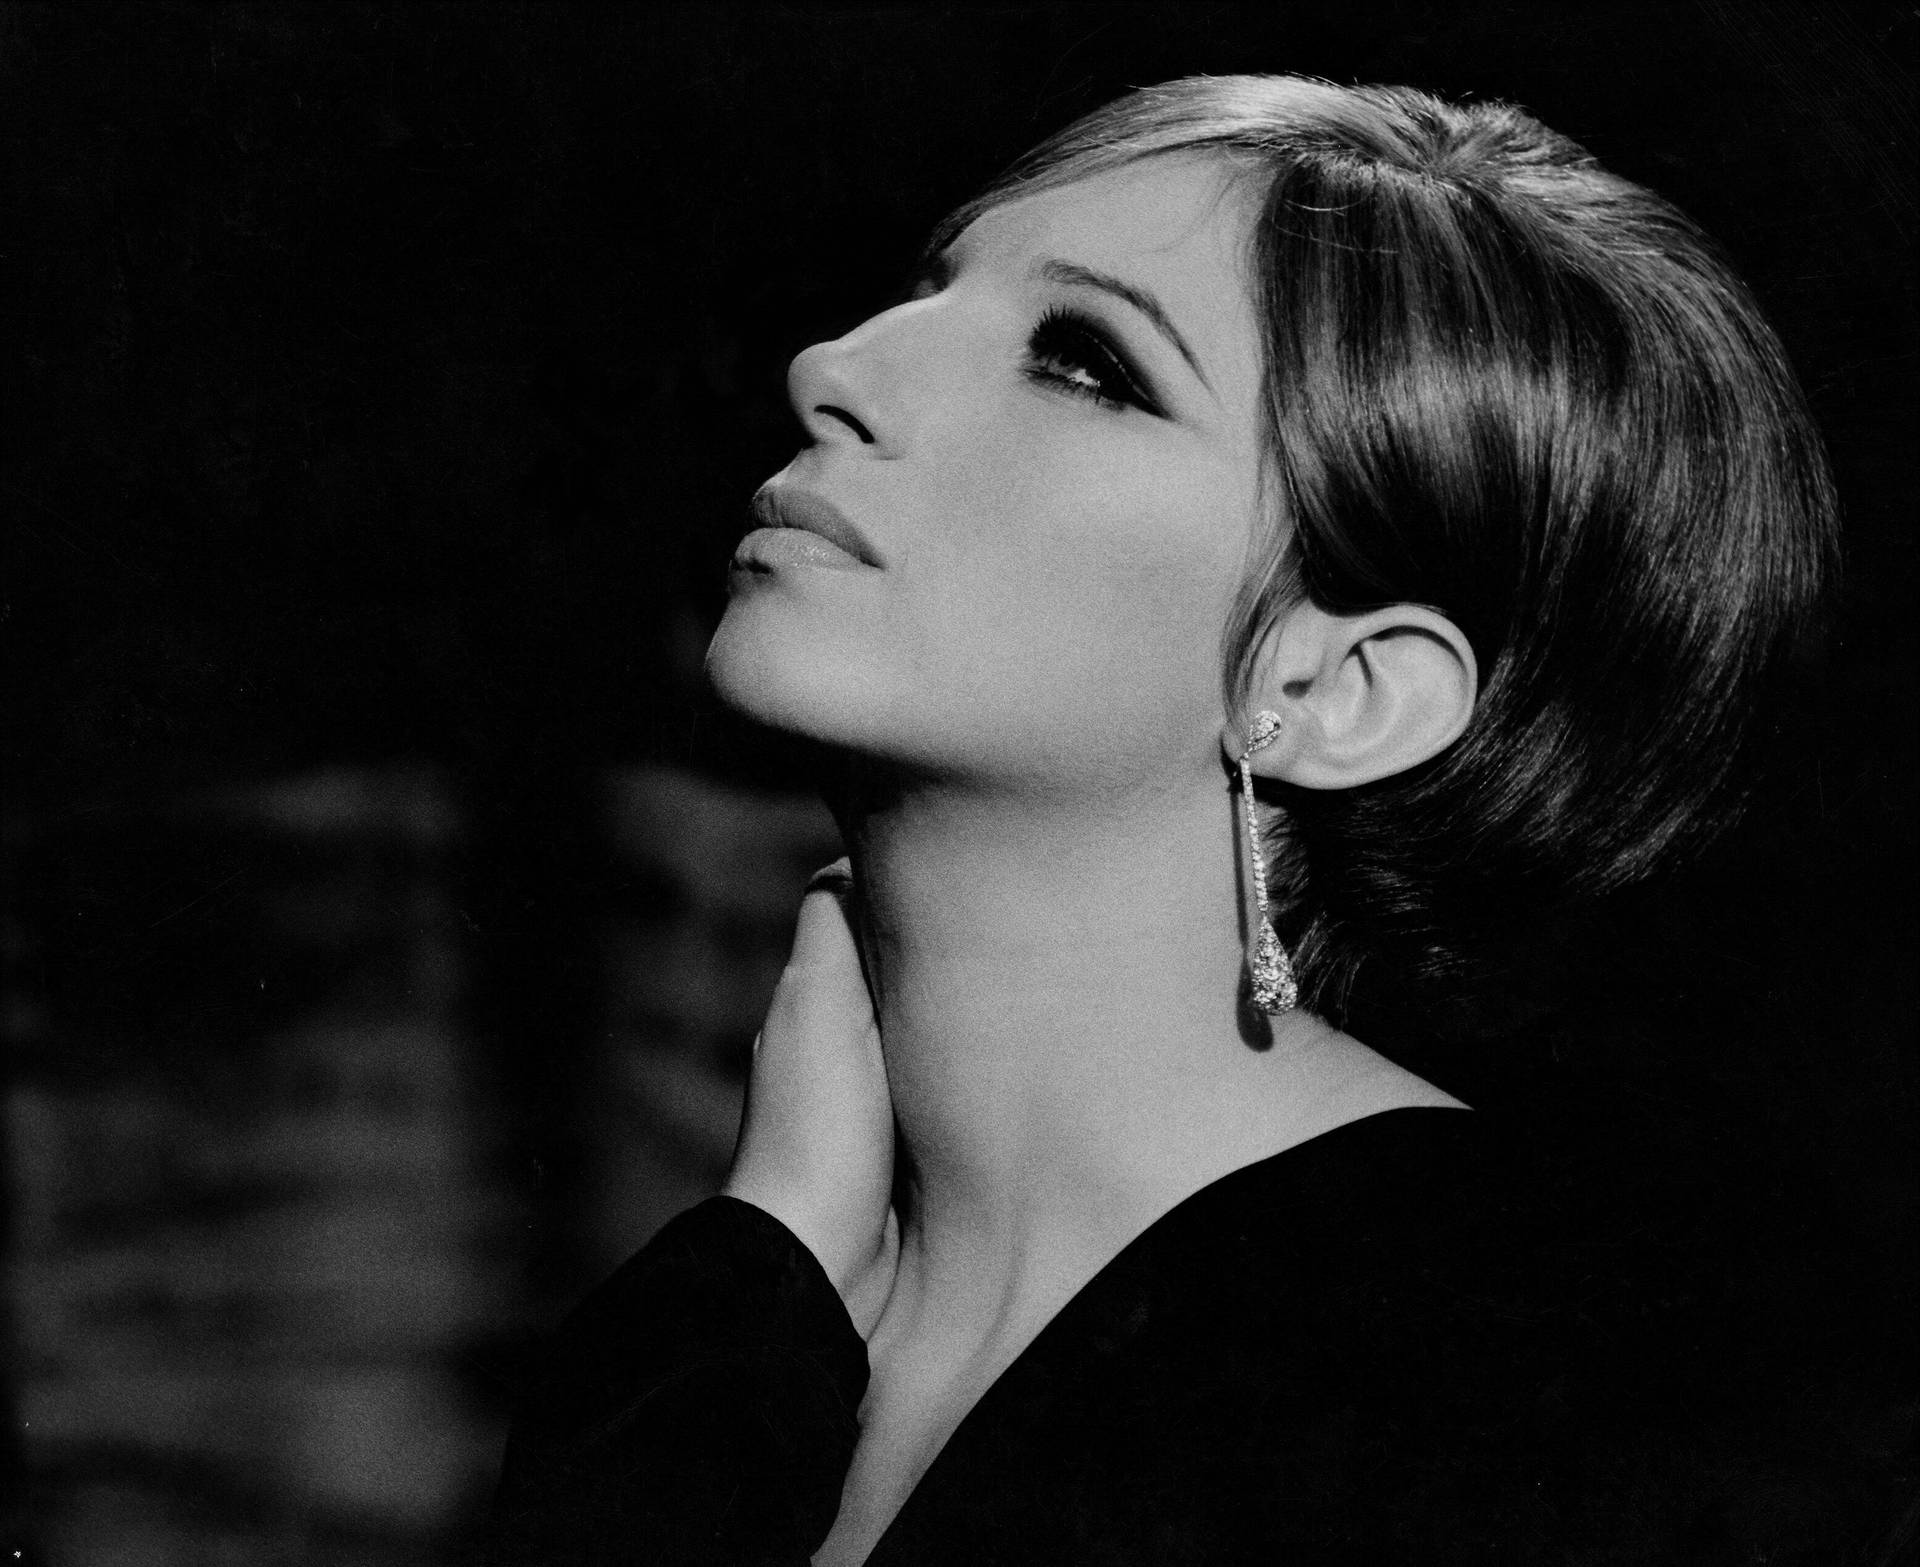 Tapet af Steve Schapiro photoshoot fra 1967 med Barbra Streisand. Wallpaper